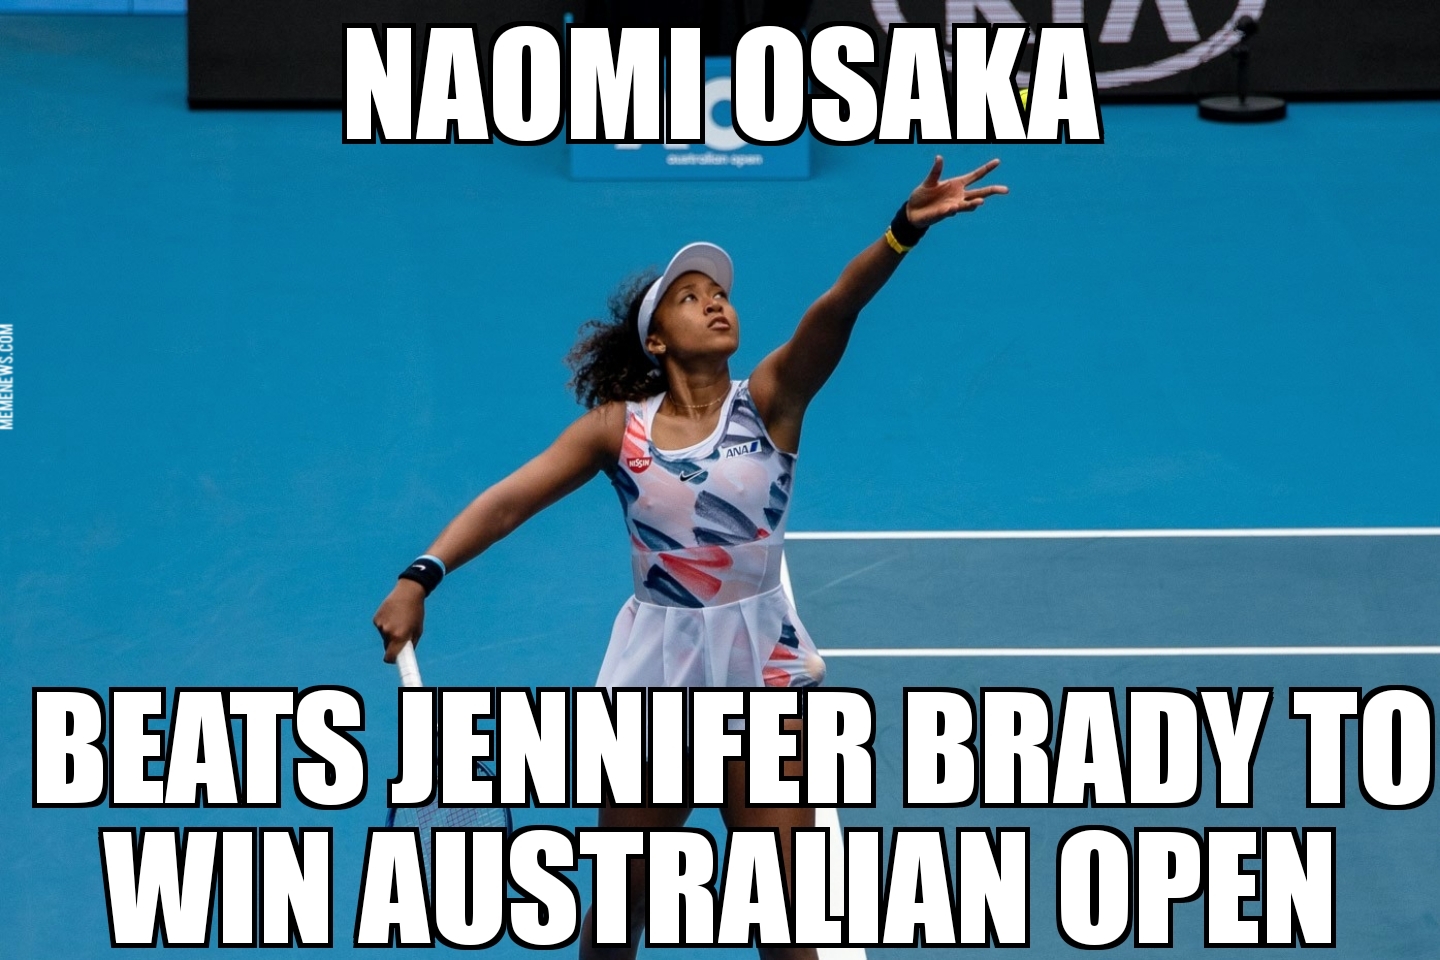 Naomi Osaka wins Australian Open